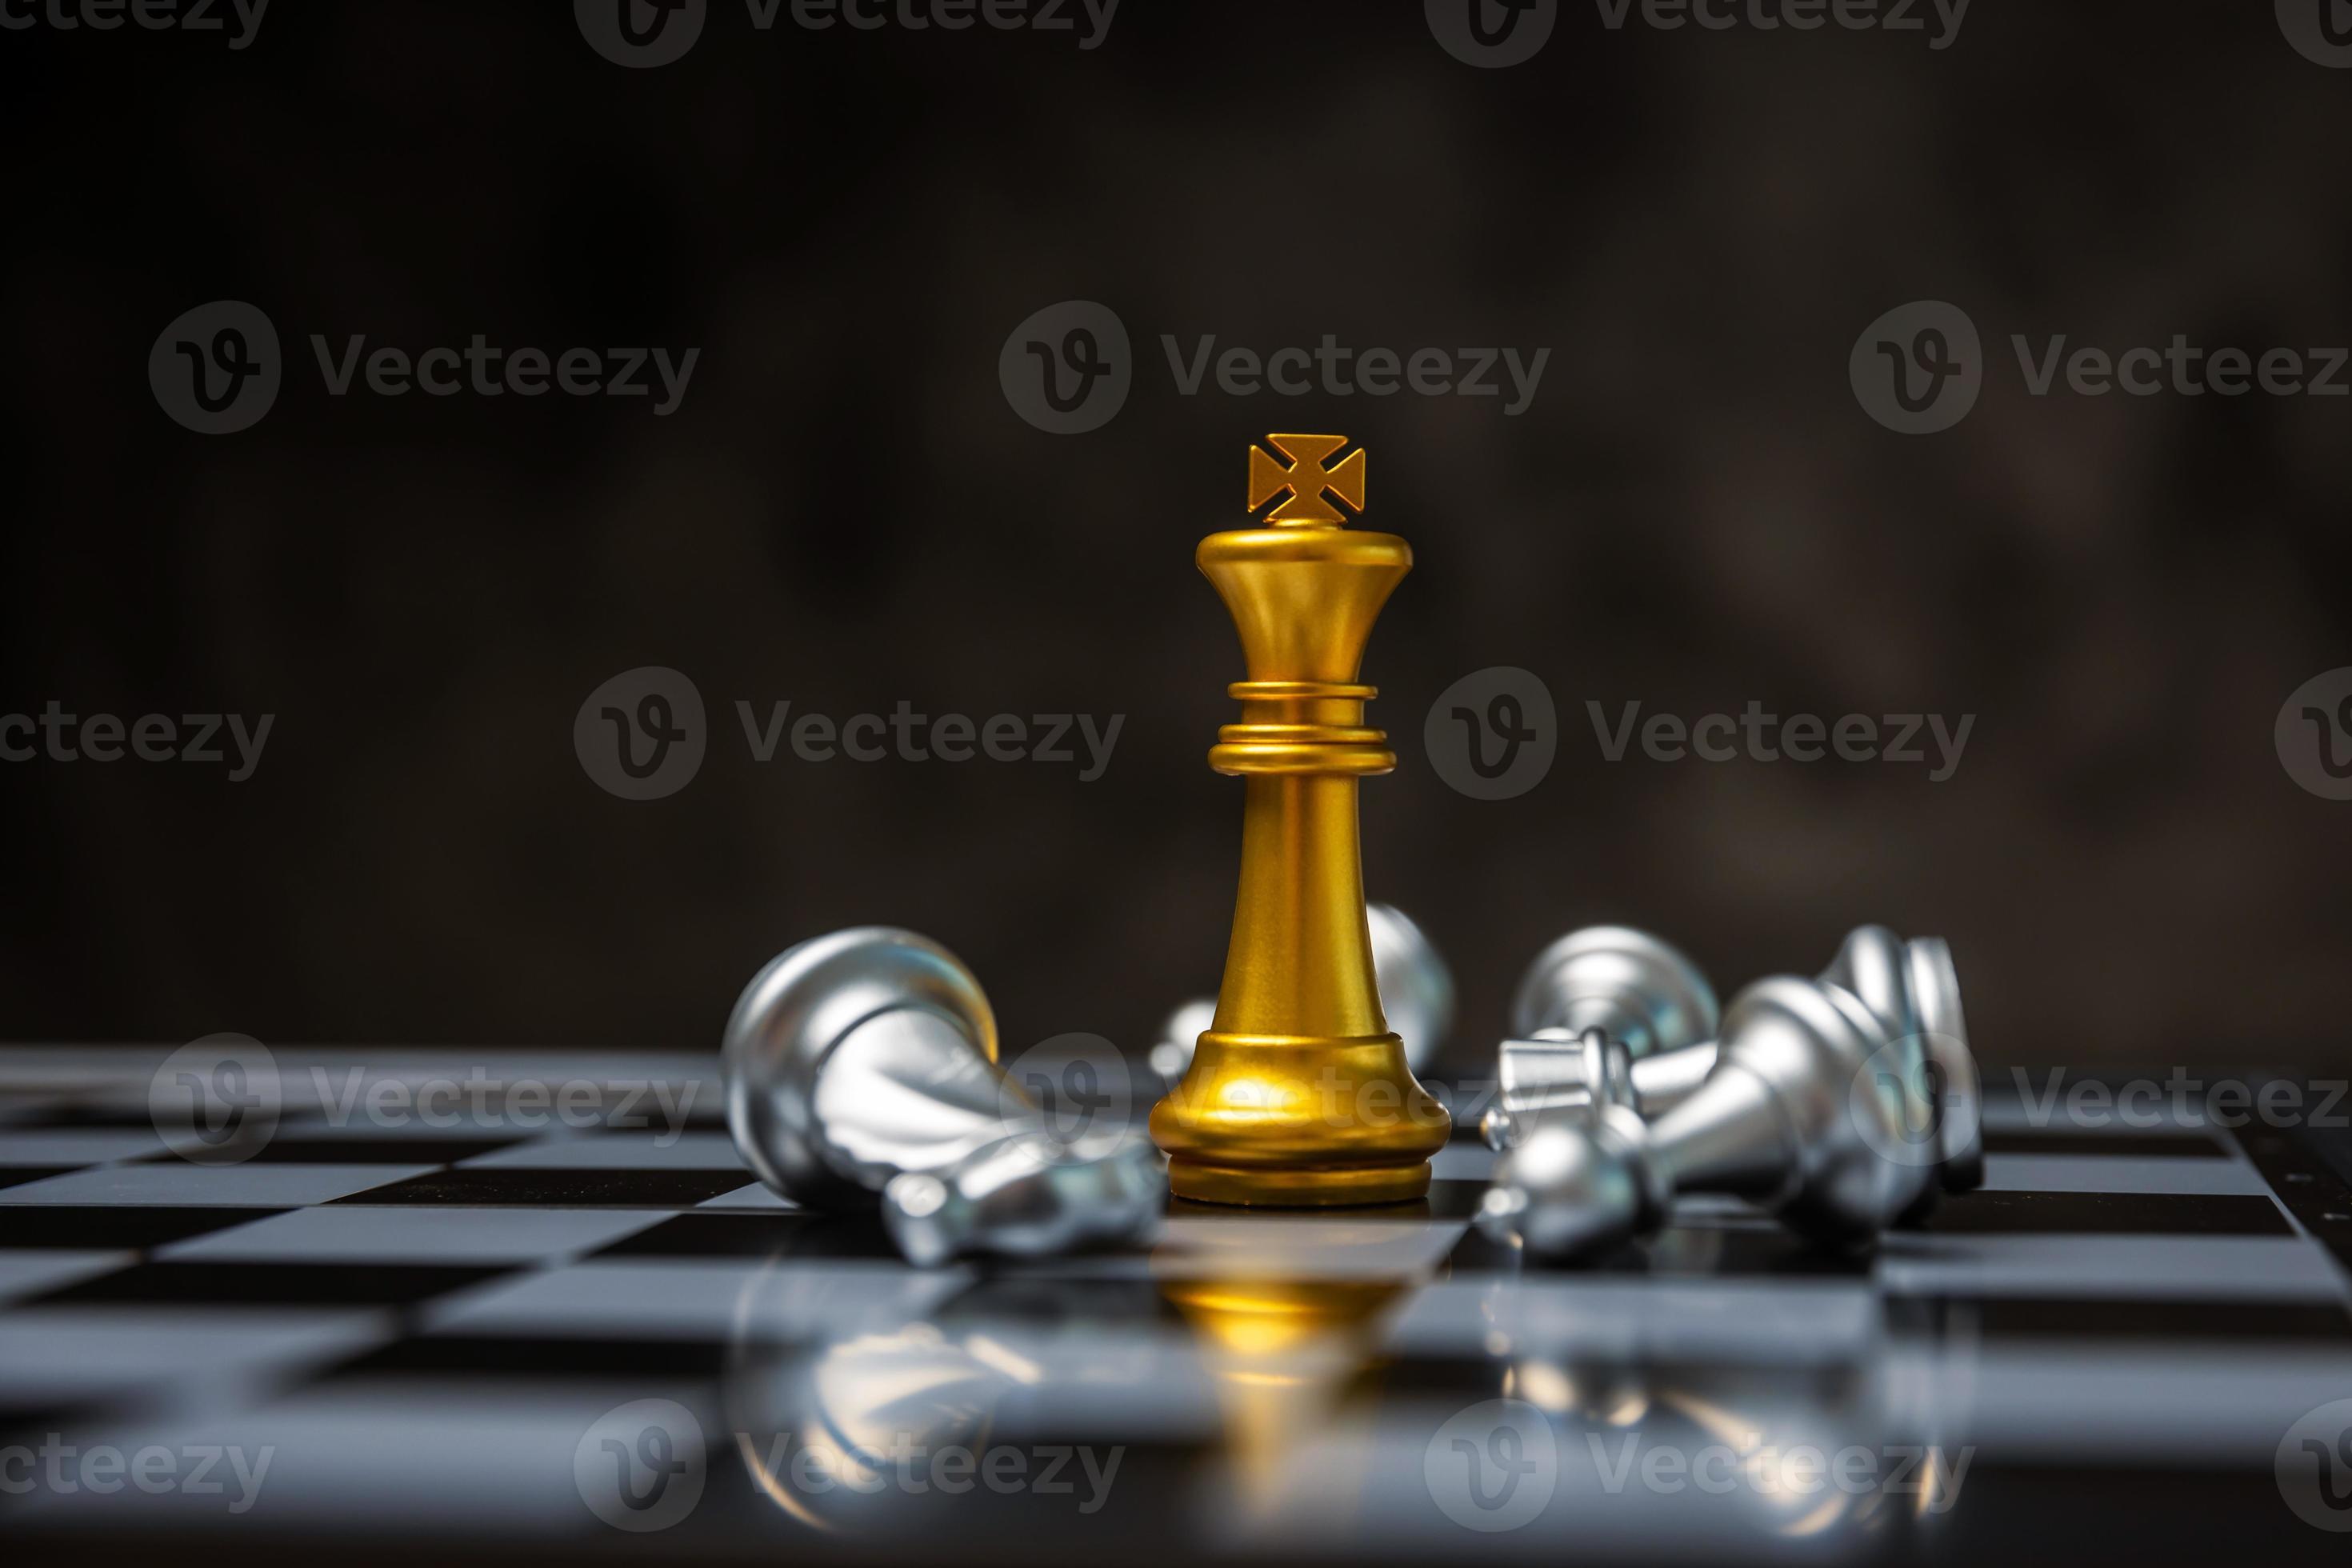 O conceito do rei do xadrez como líder